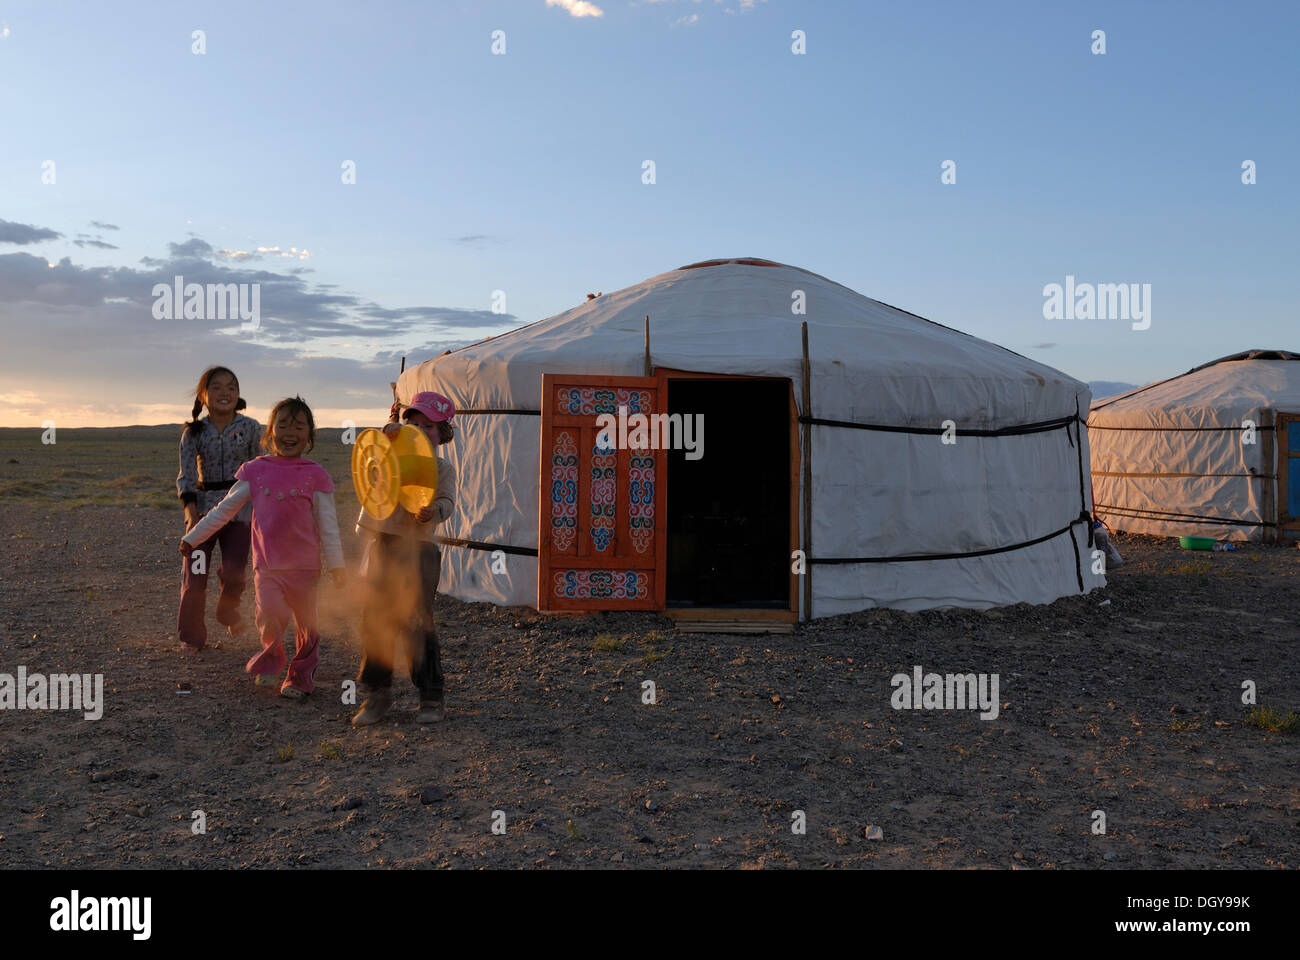 Enfants mongols et fille européenne jouant avec un tambour en plastique jaune en face d'une yourte ou ger mongole, désert de Gobi Banque D'Images